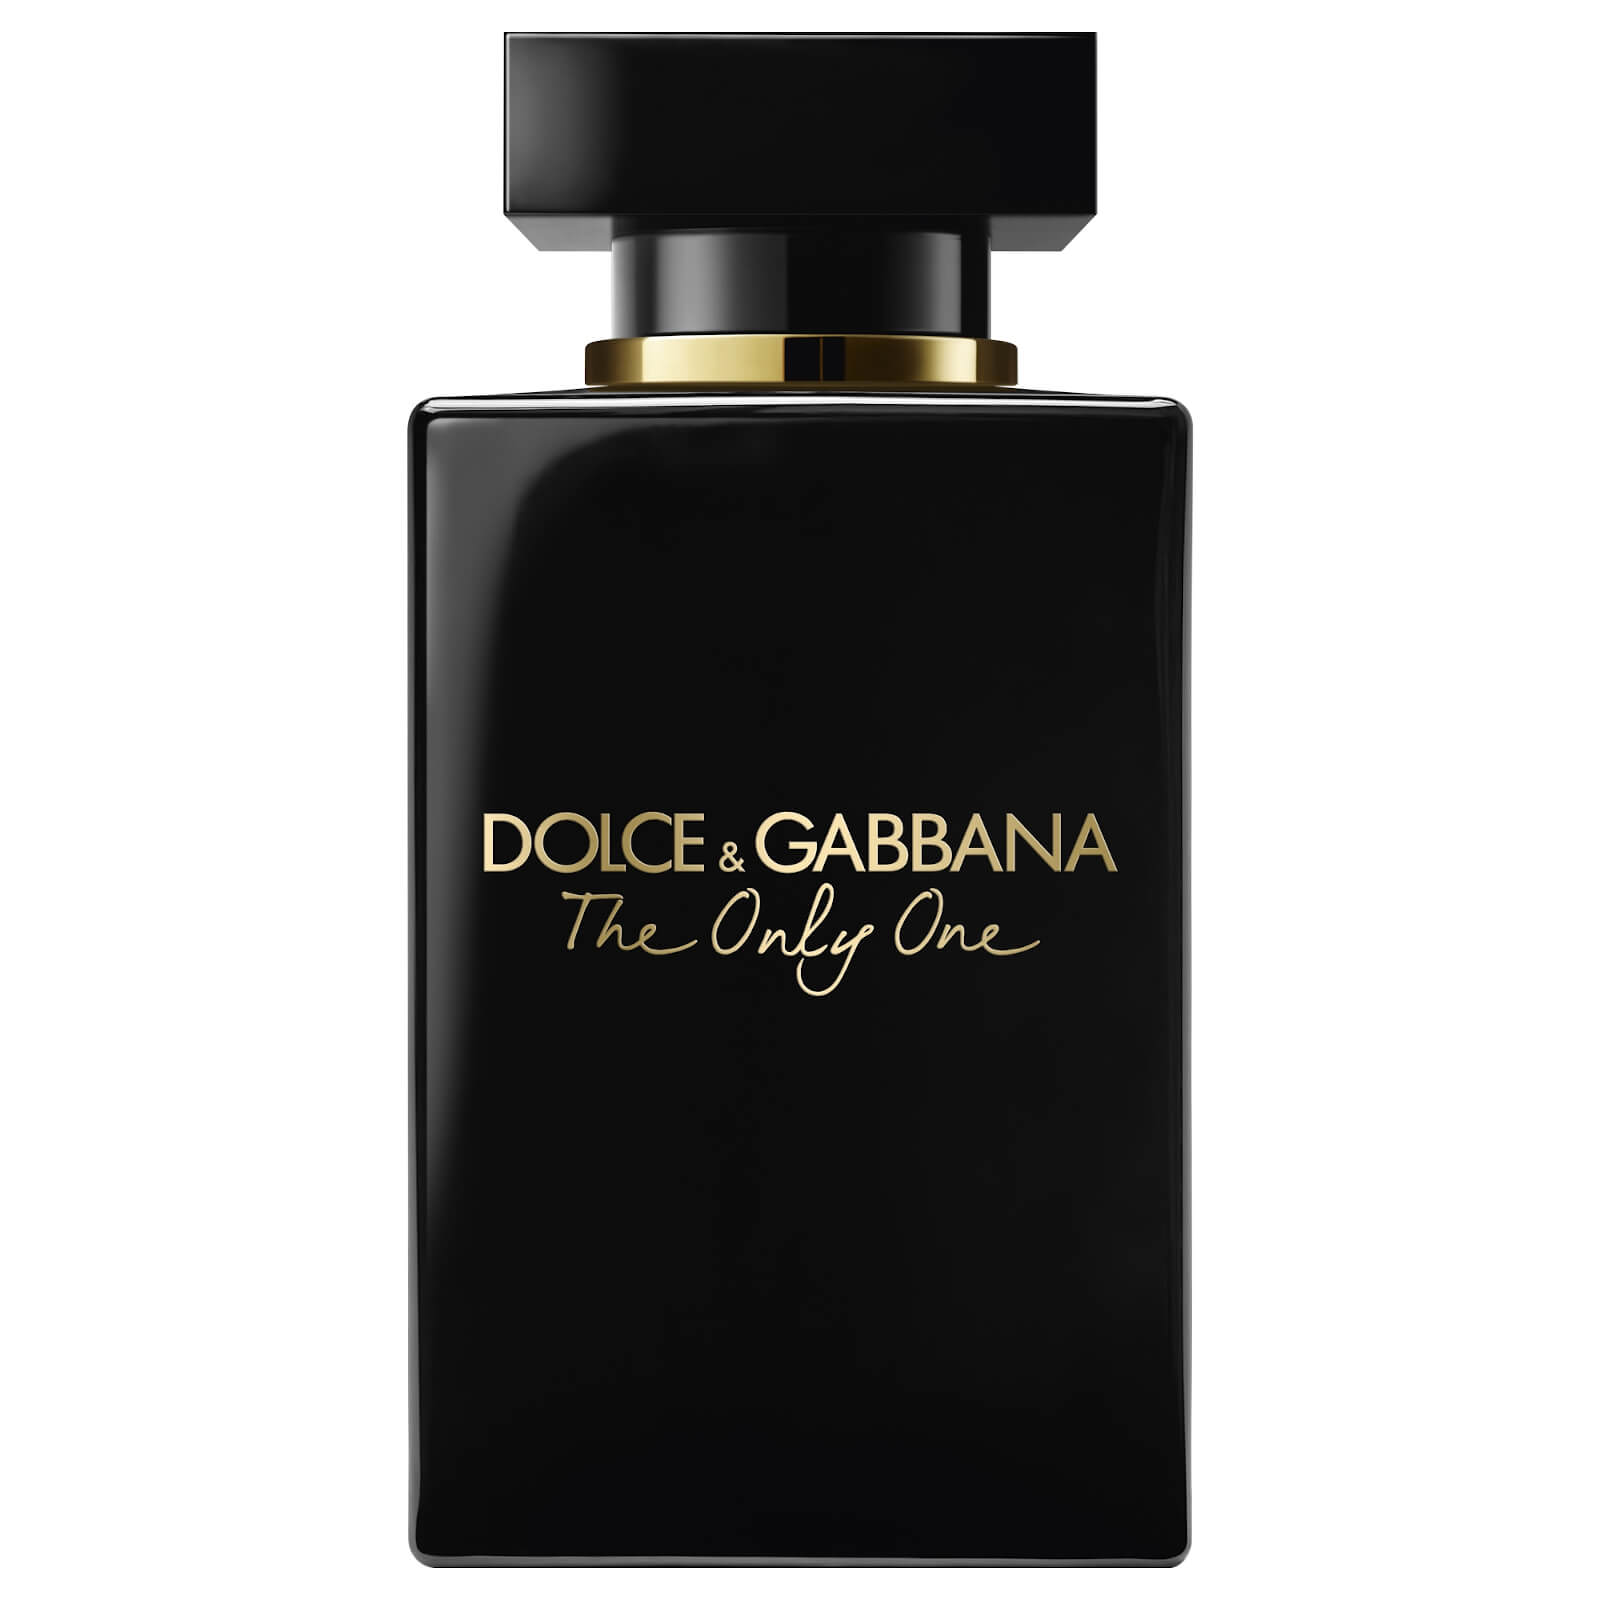 Dolce & Gabbana The Only One Eau de Parfum Intense - 100ml